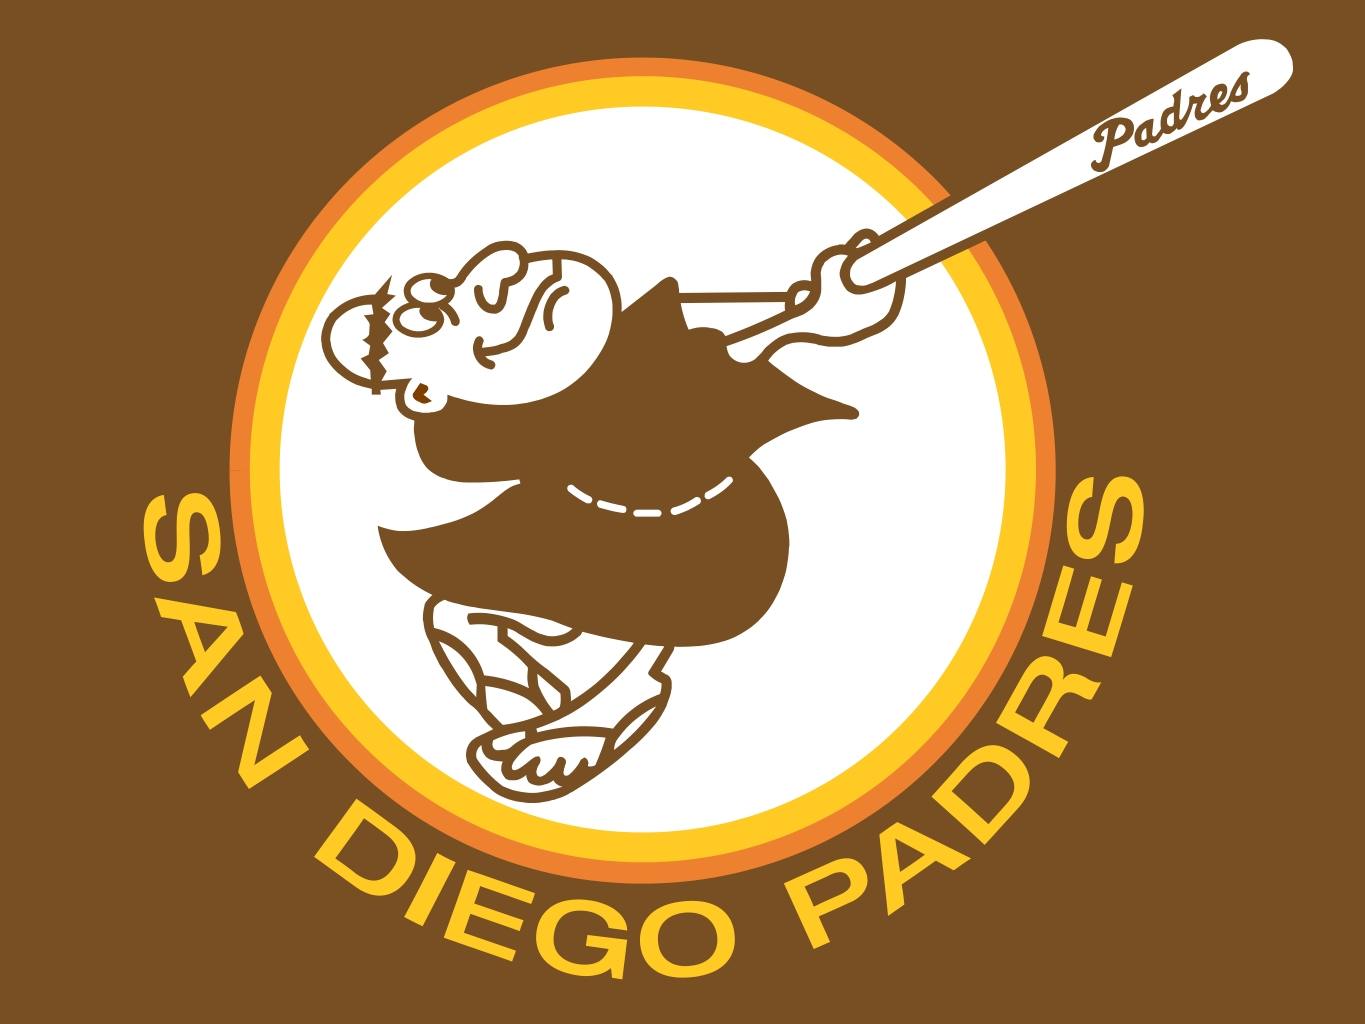 Paders Logo - Bring Back the 